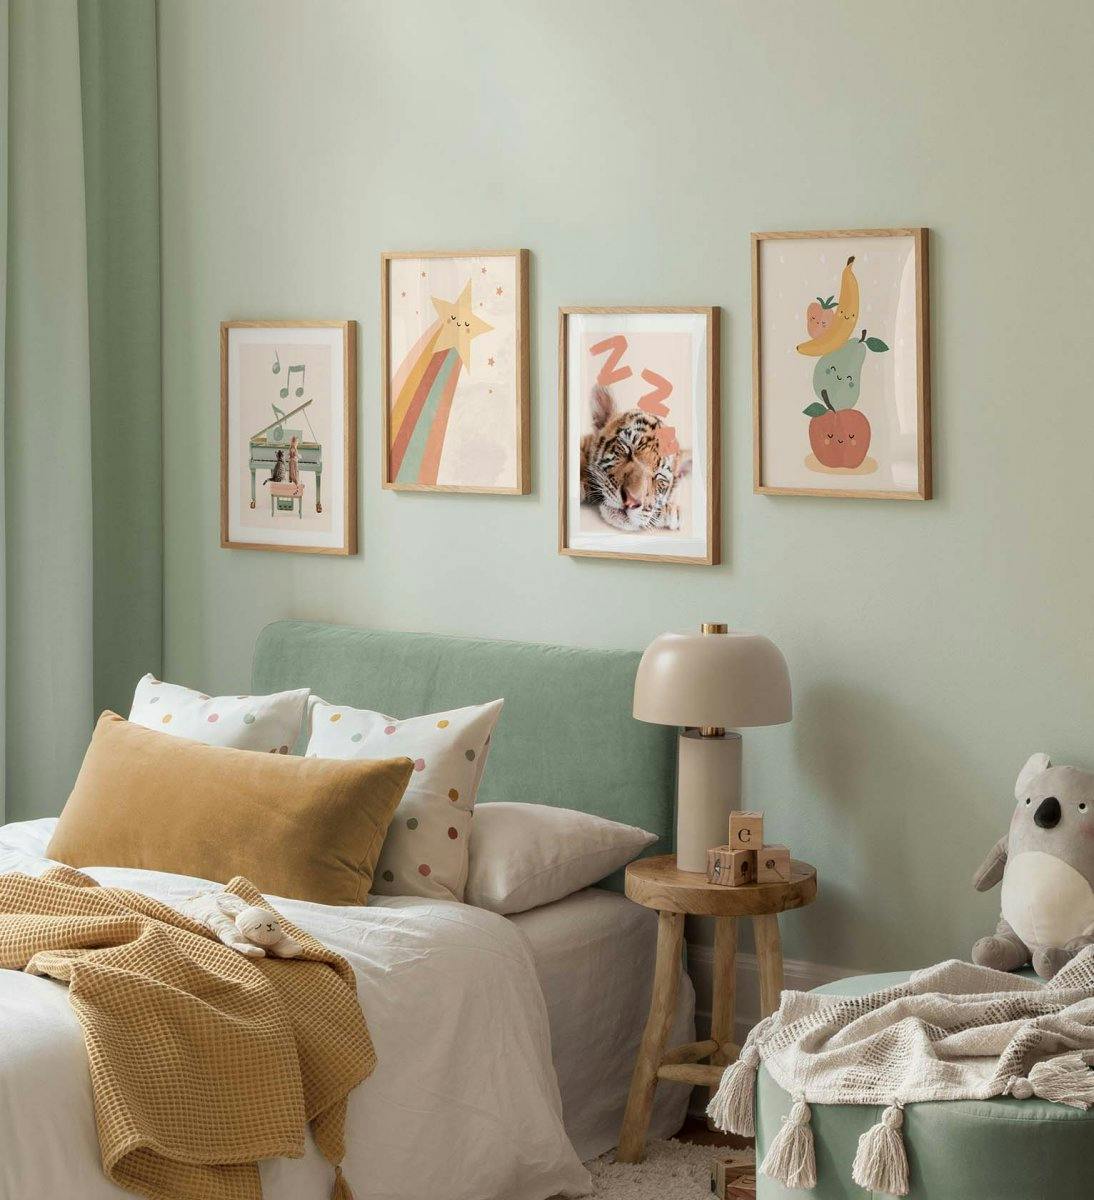 Fotowand voor de kinderkamer met vrolijke prints van fruitillustraties en dierenposters in pastelkleuren met eiken lijsten